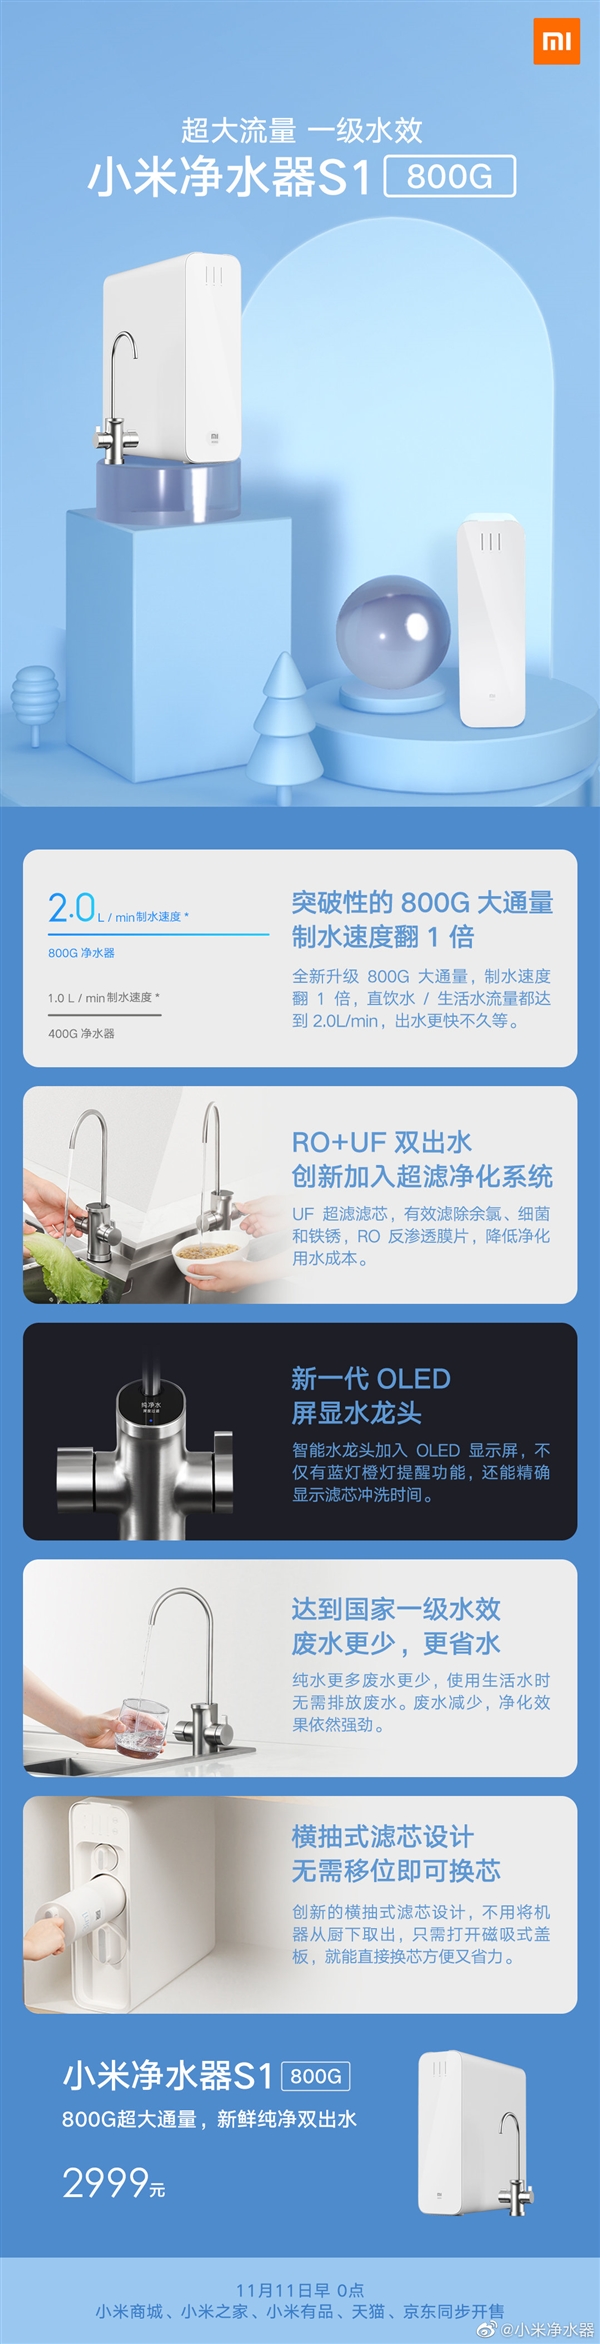 小米净水器S1 800G发布：制水速度高达每分钟2升、双11开卖